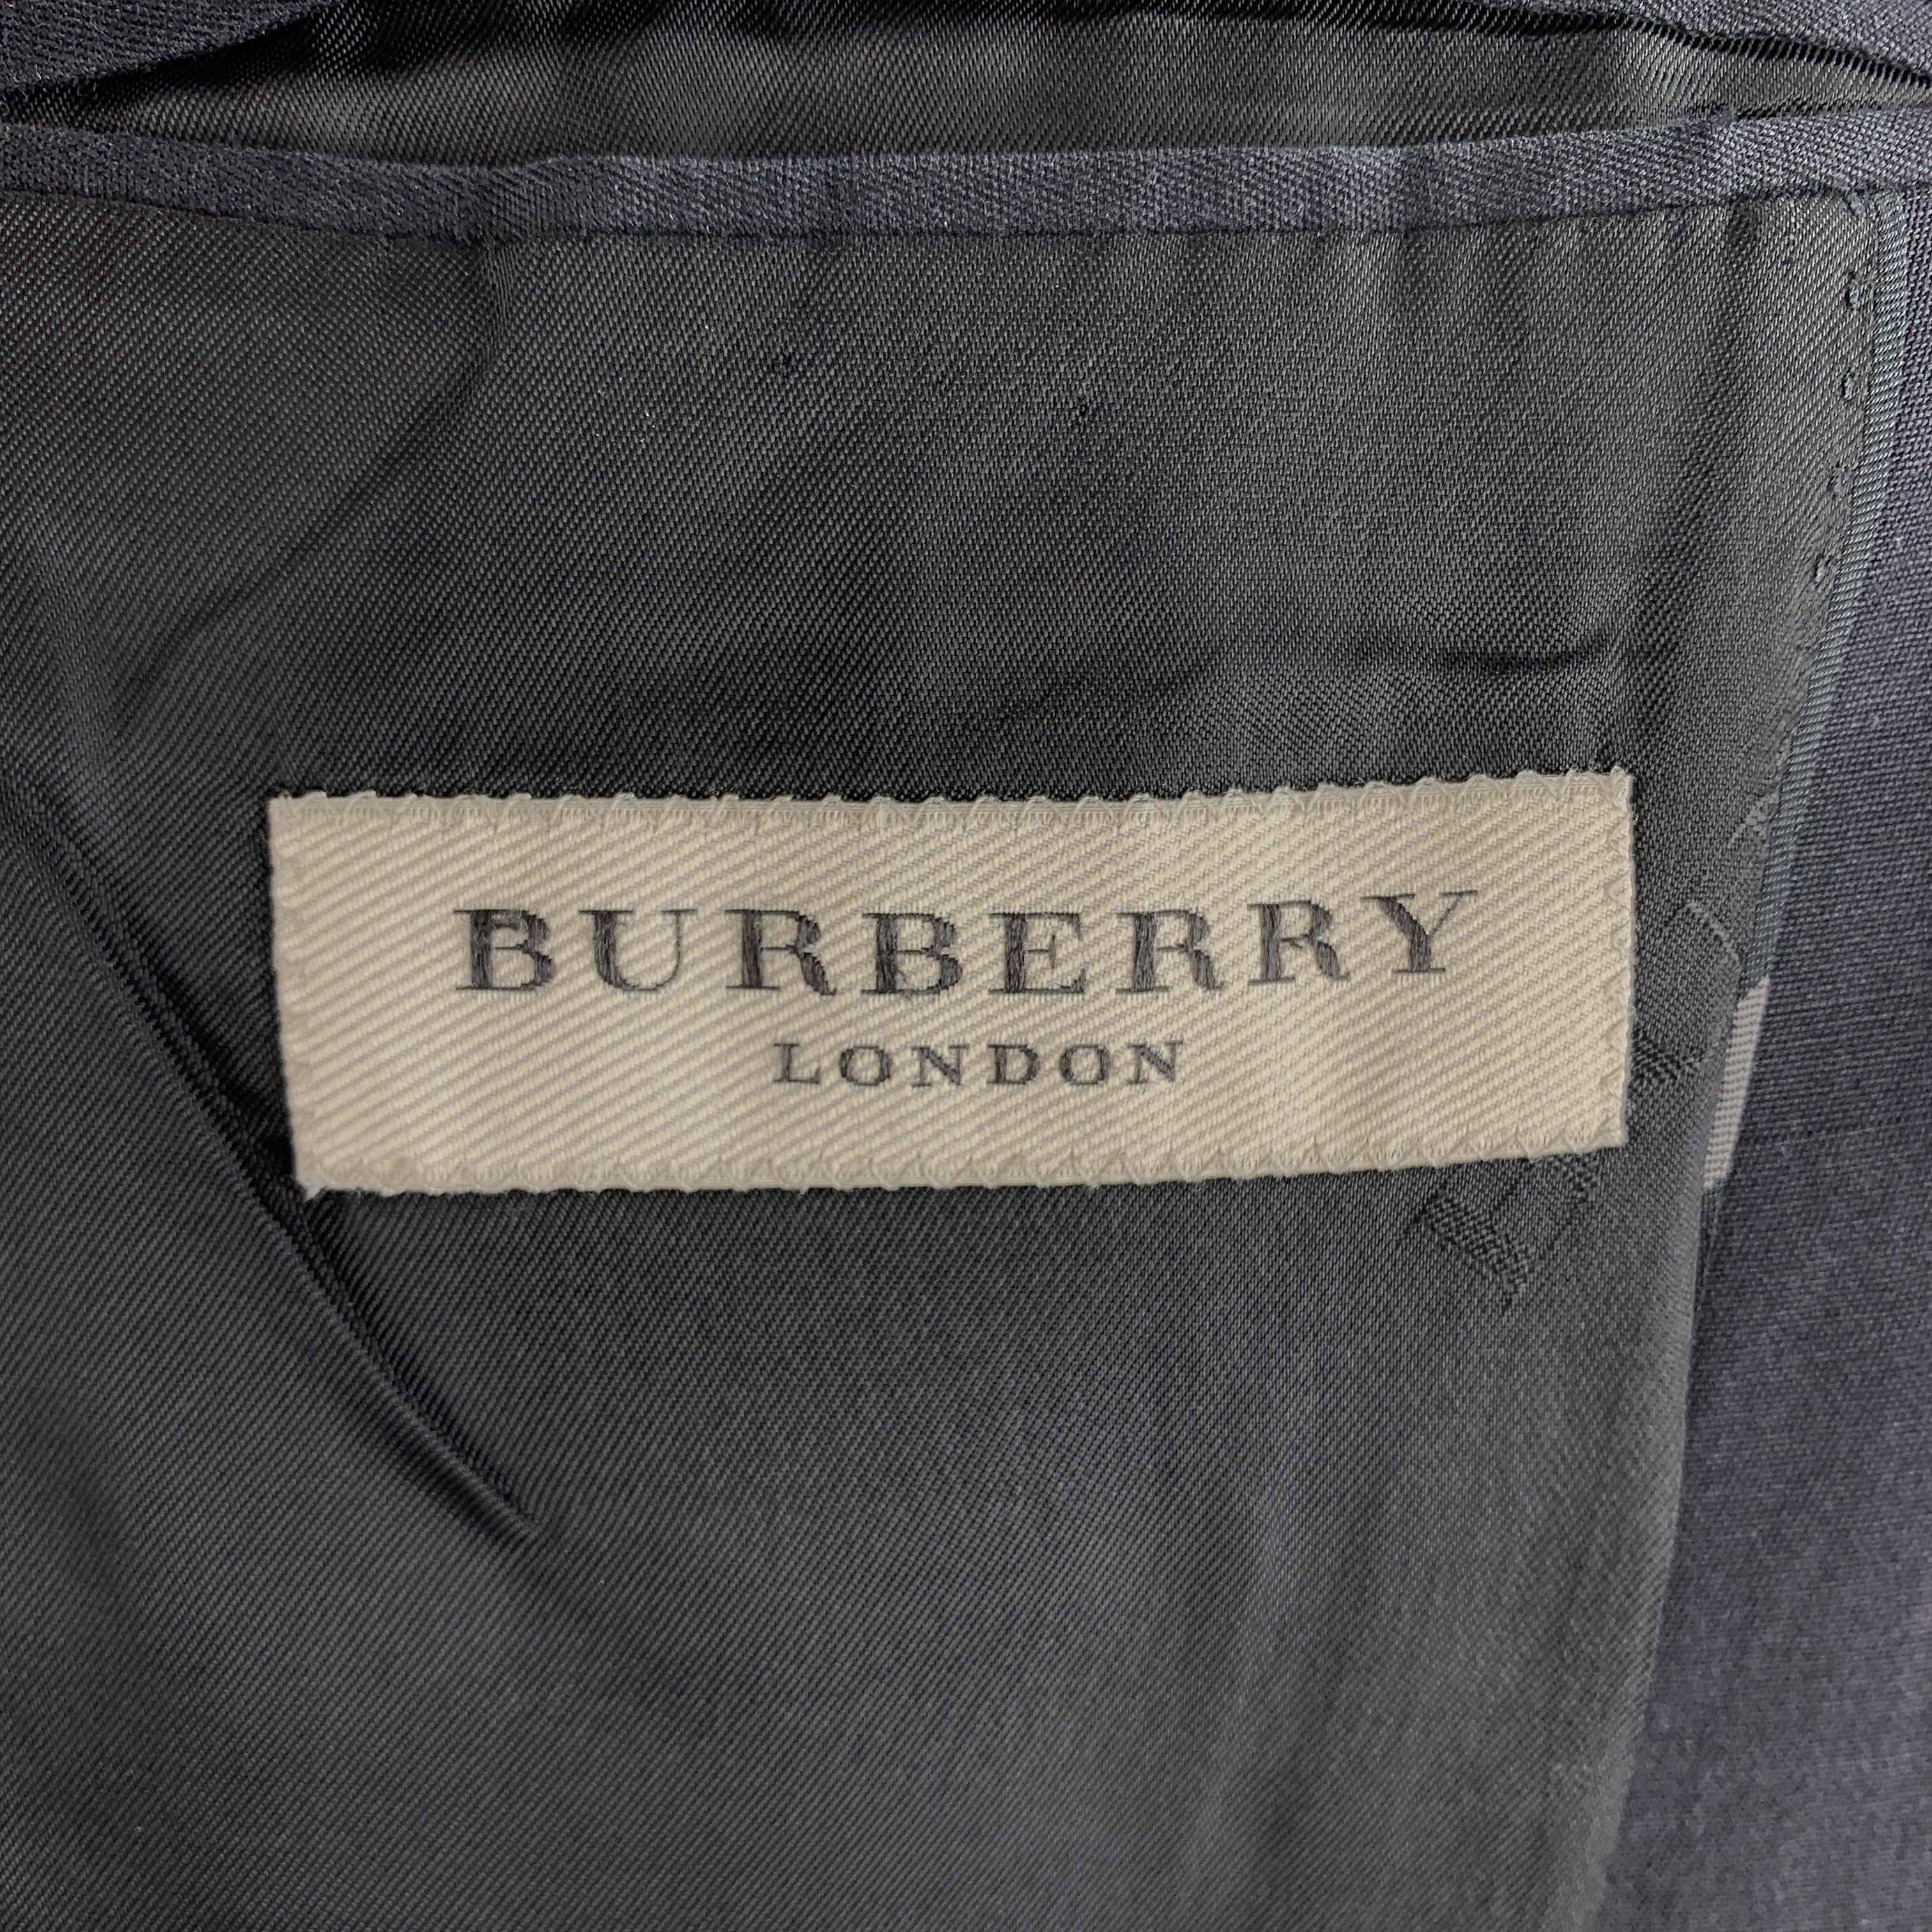 BURBERRY LONDON Size 44 Black Plaid Cotton Blend Notch Lapel Sport Coat 1